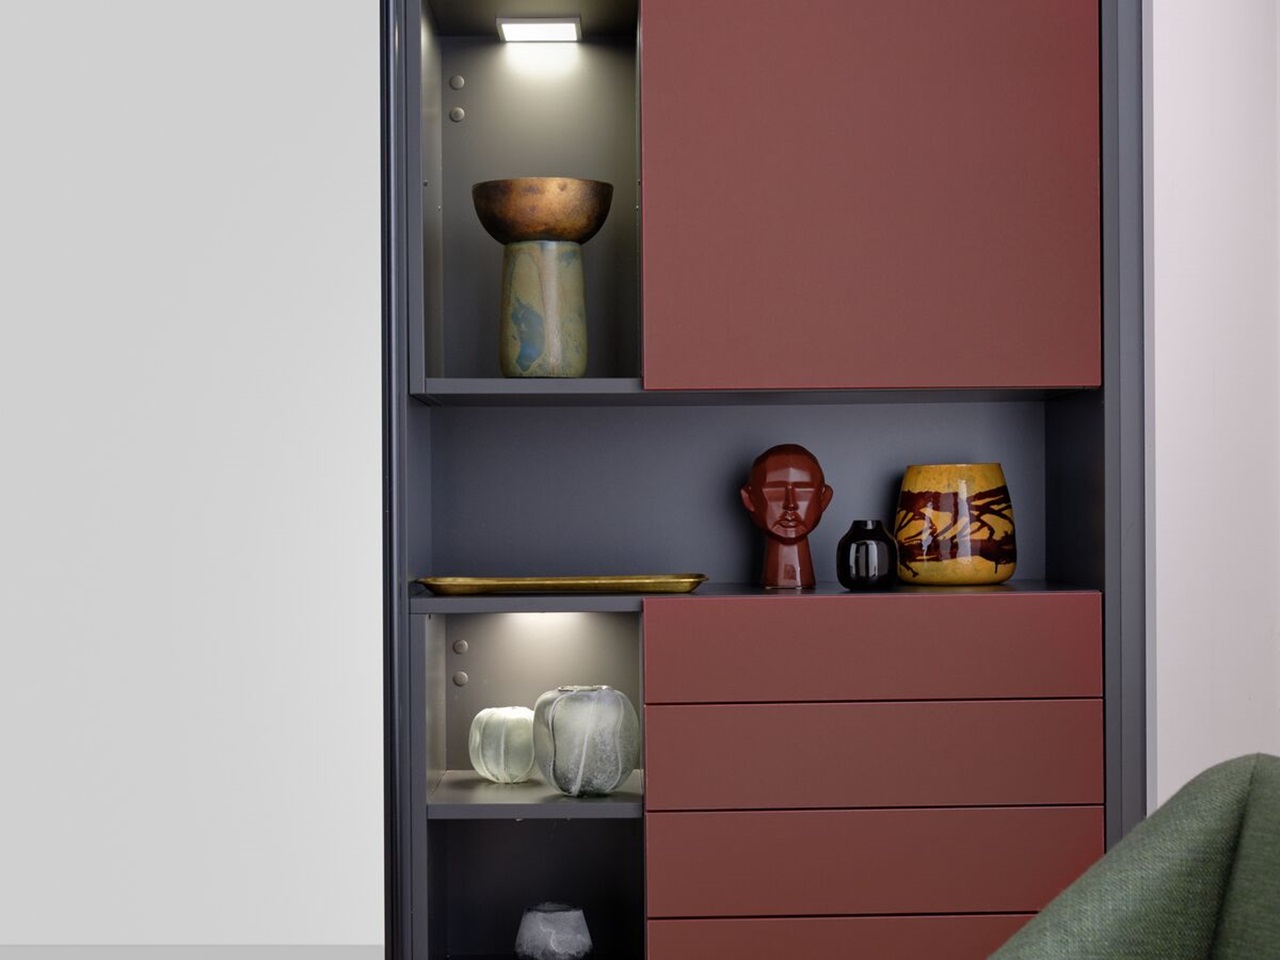 Interior lighting for wardrobe shelves